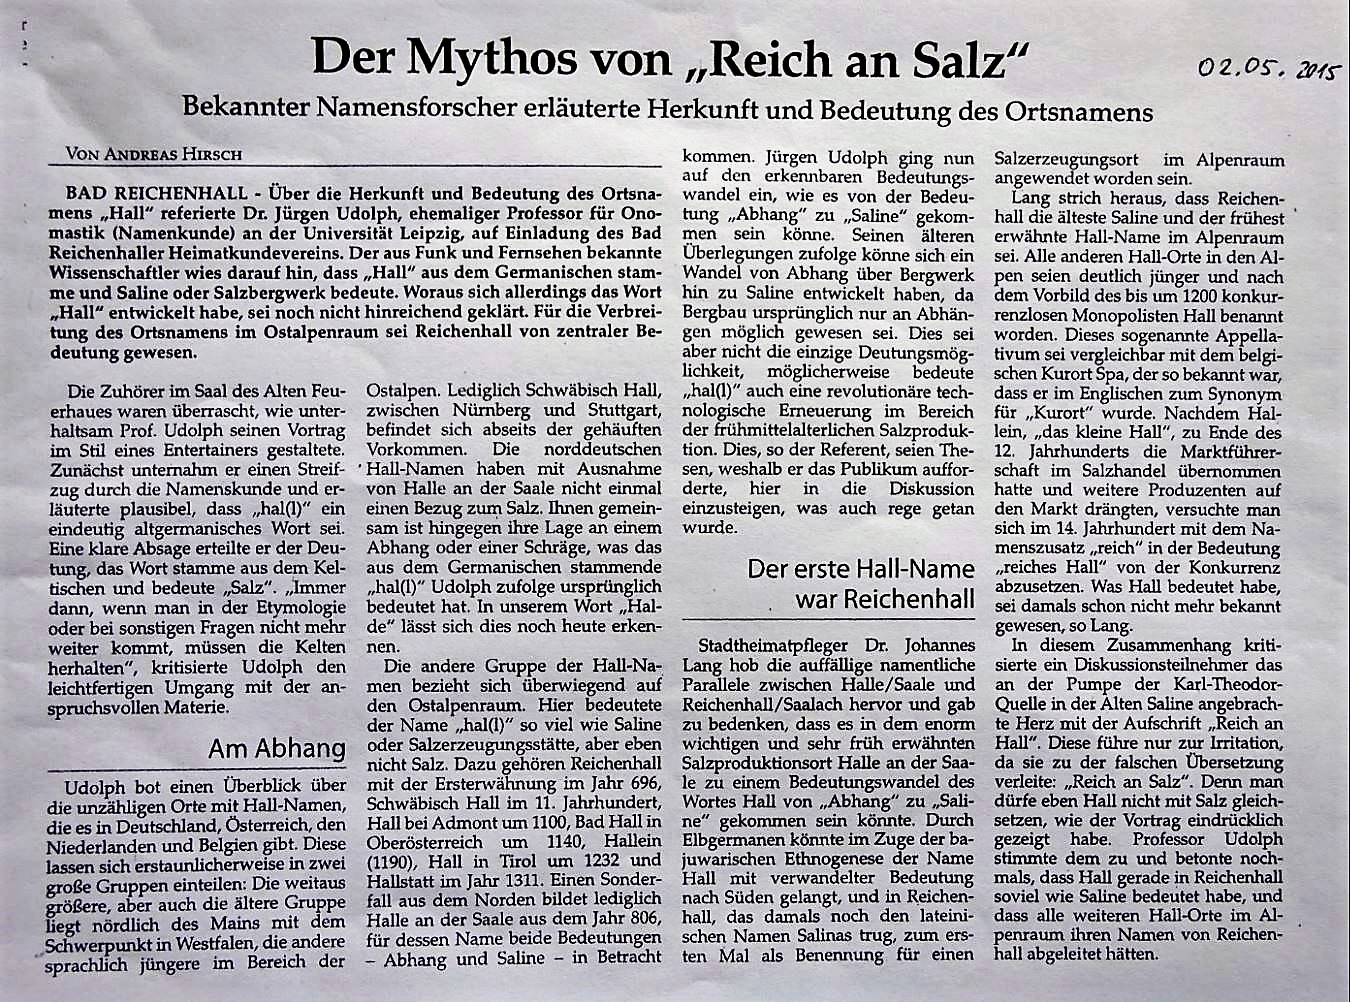 Bericht im Reichenhaller Tagblatt vom 02.05.2015